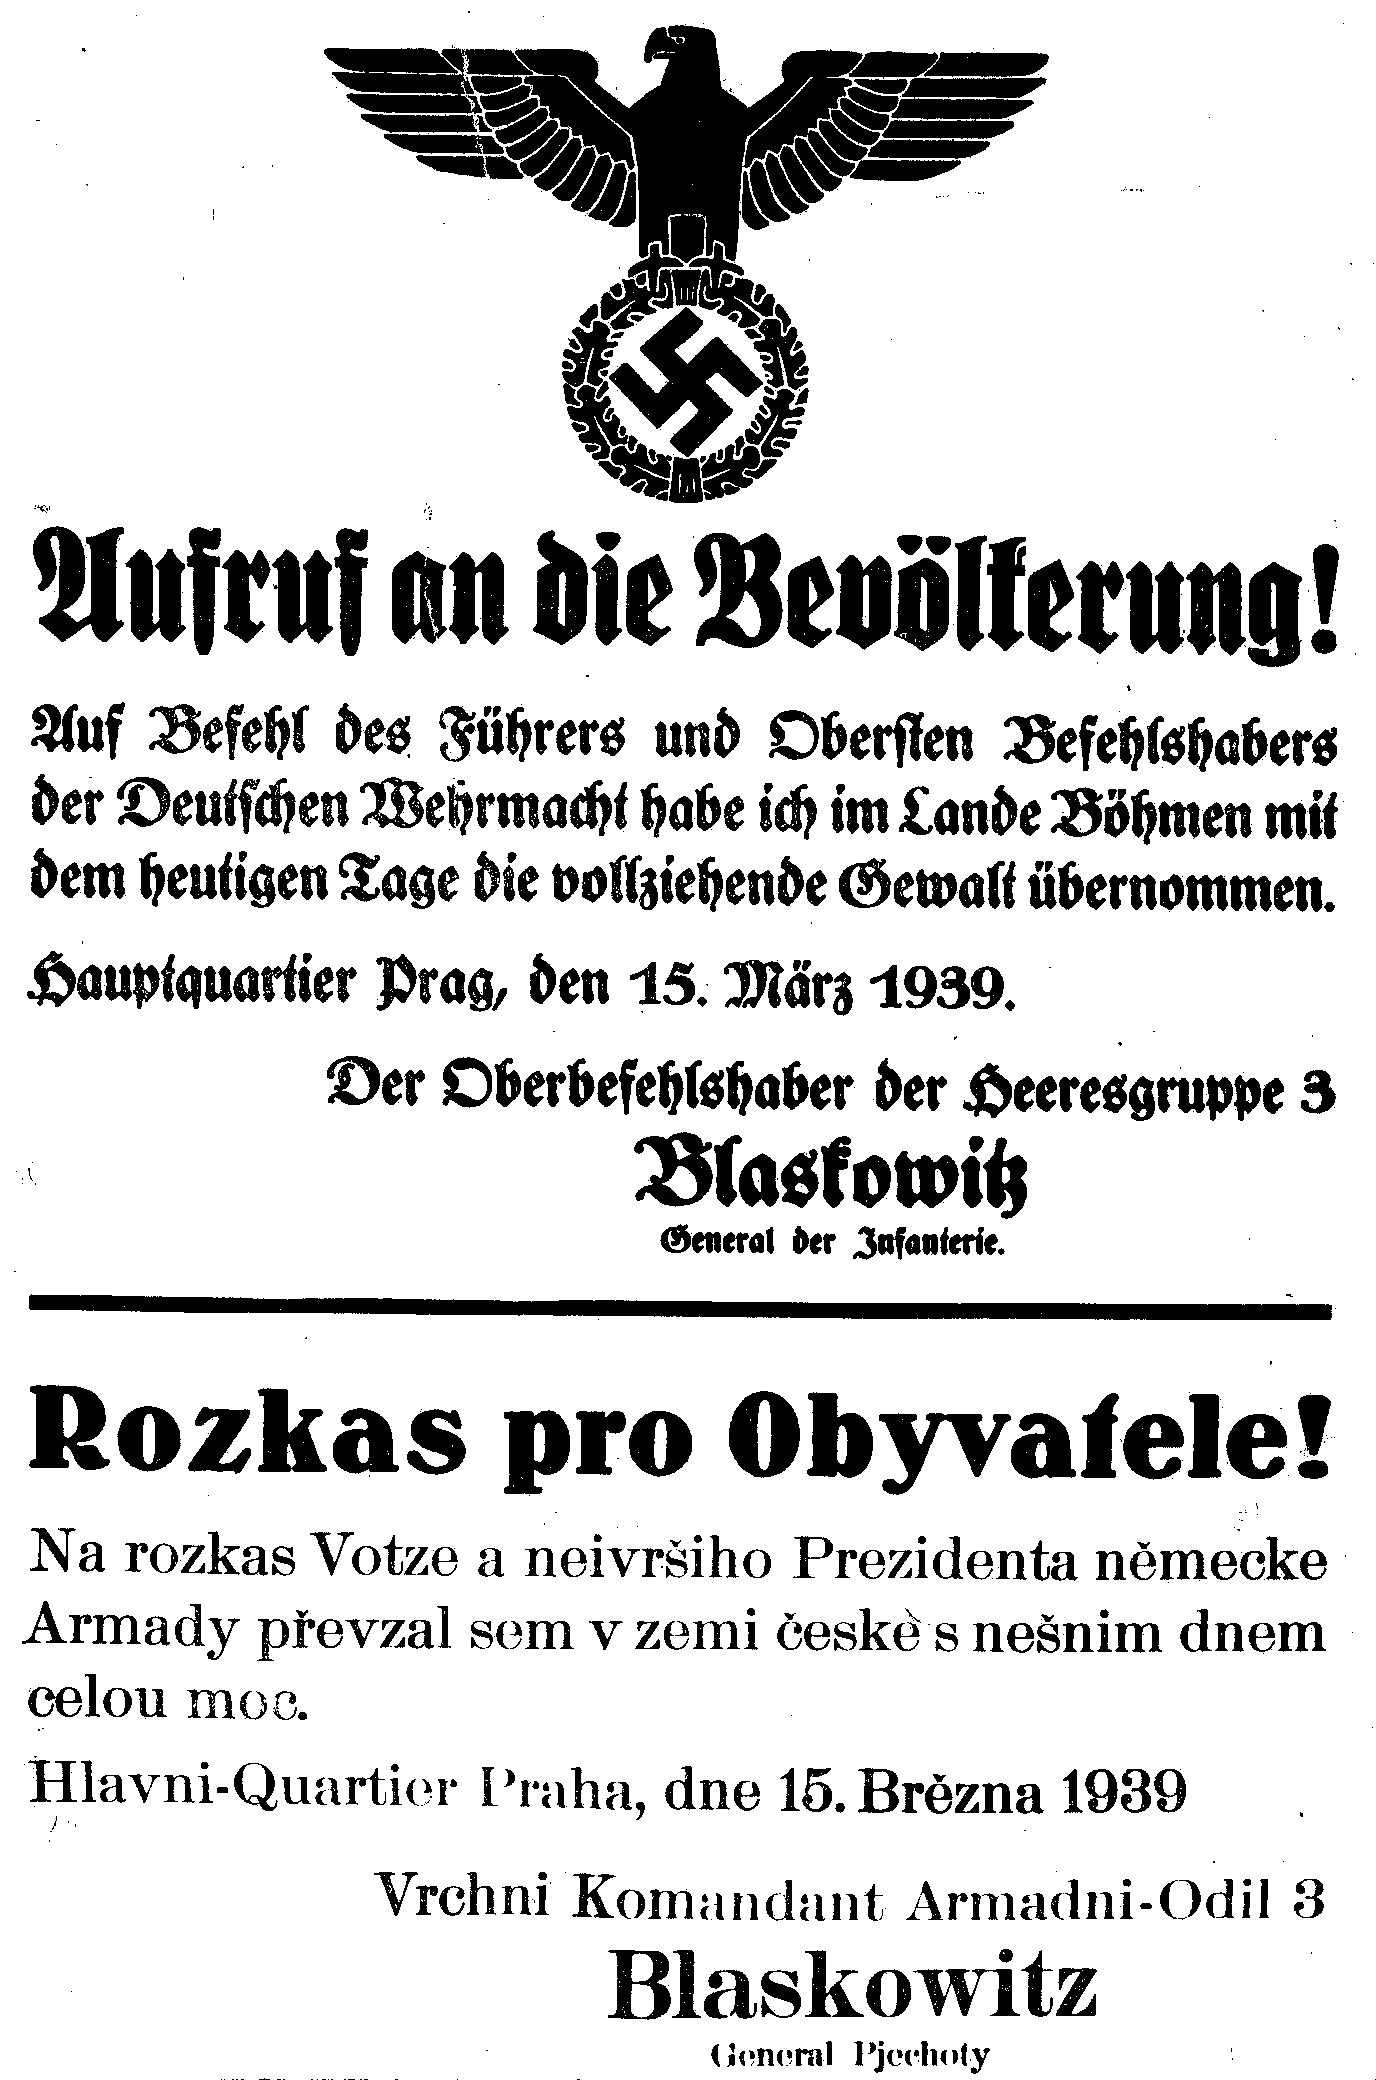 15 de marzo de 1939 Checoslovaquia se convertía en un protectorado de la Alemania Nazi